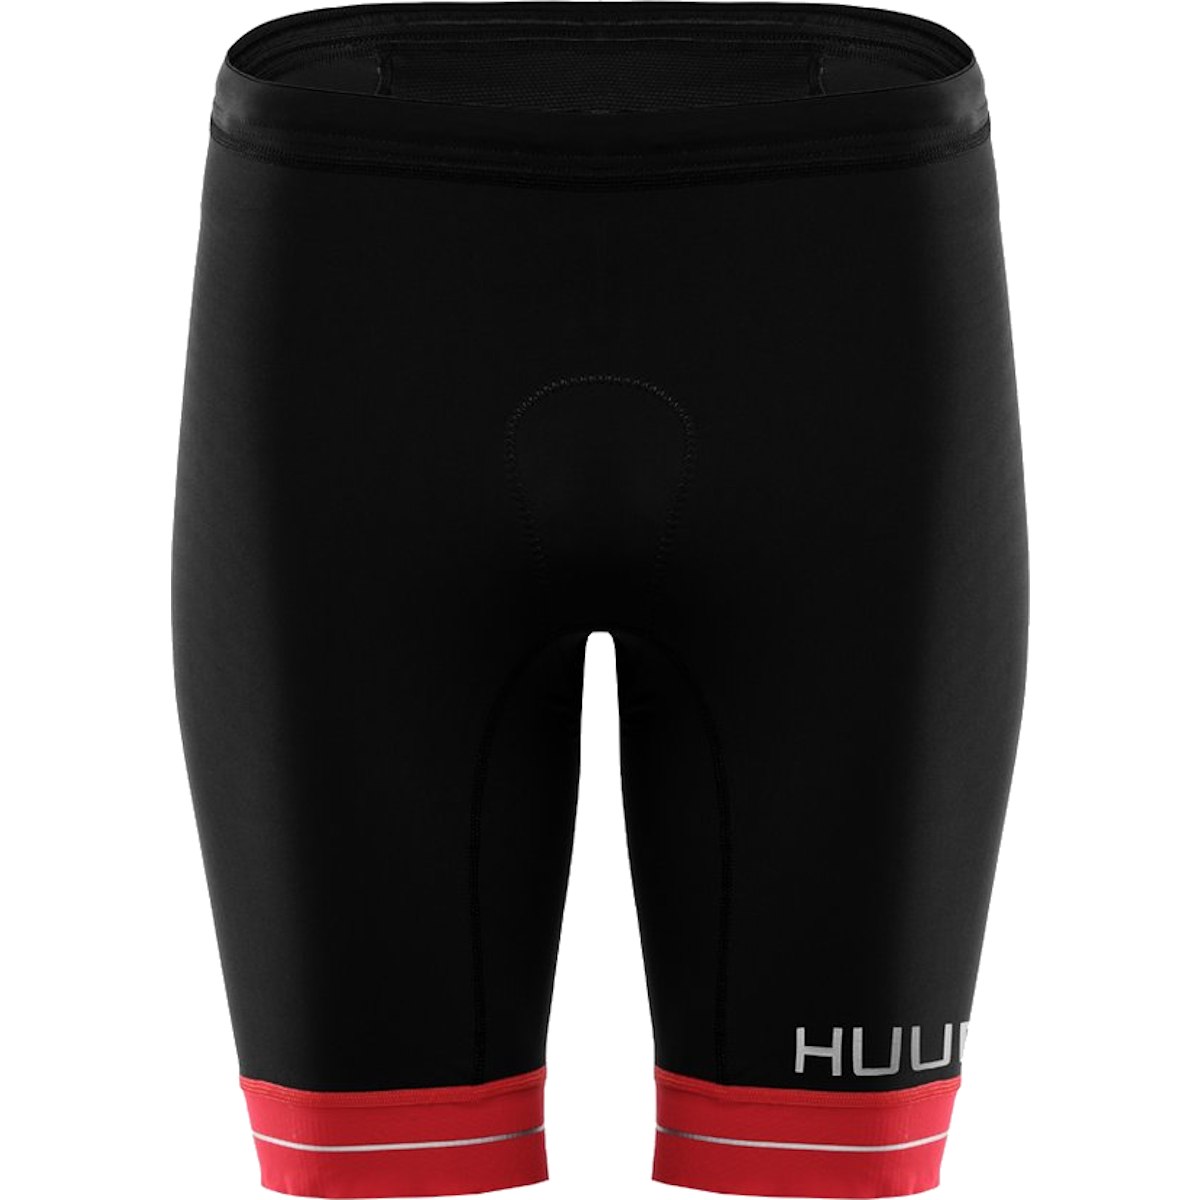 Produktbild von HUUB Design RaceLine Triathlonshorts - schwarz/rot